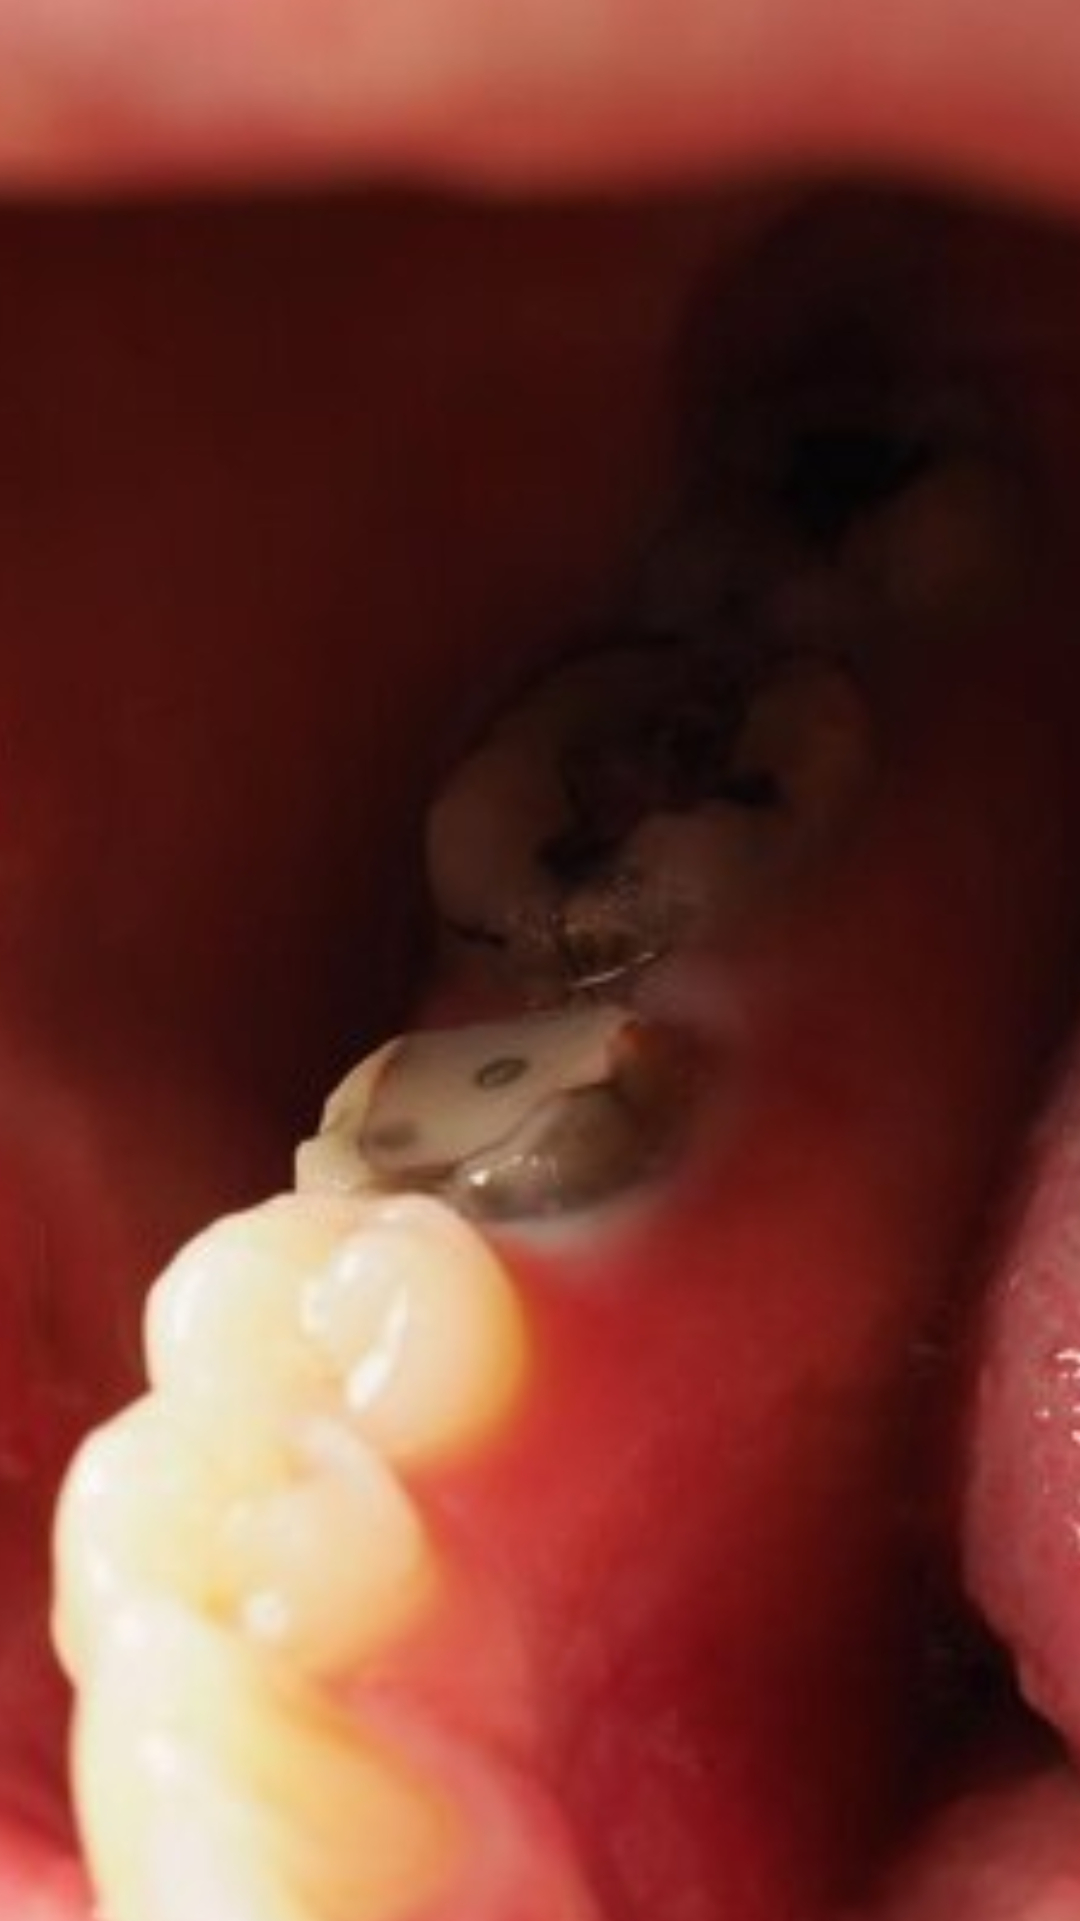 दांत में लगे कीड़ों, दर्द और सड़न से ऐसे पाएं छुटकारा